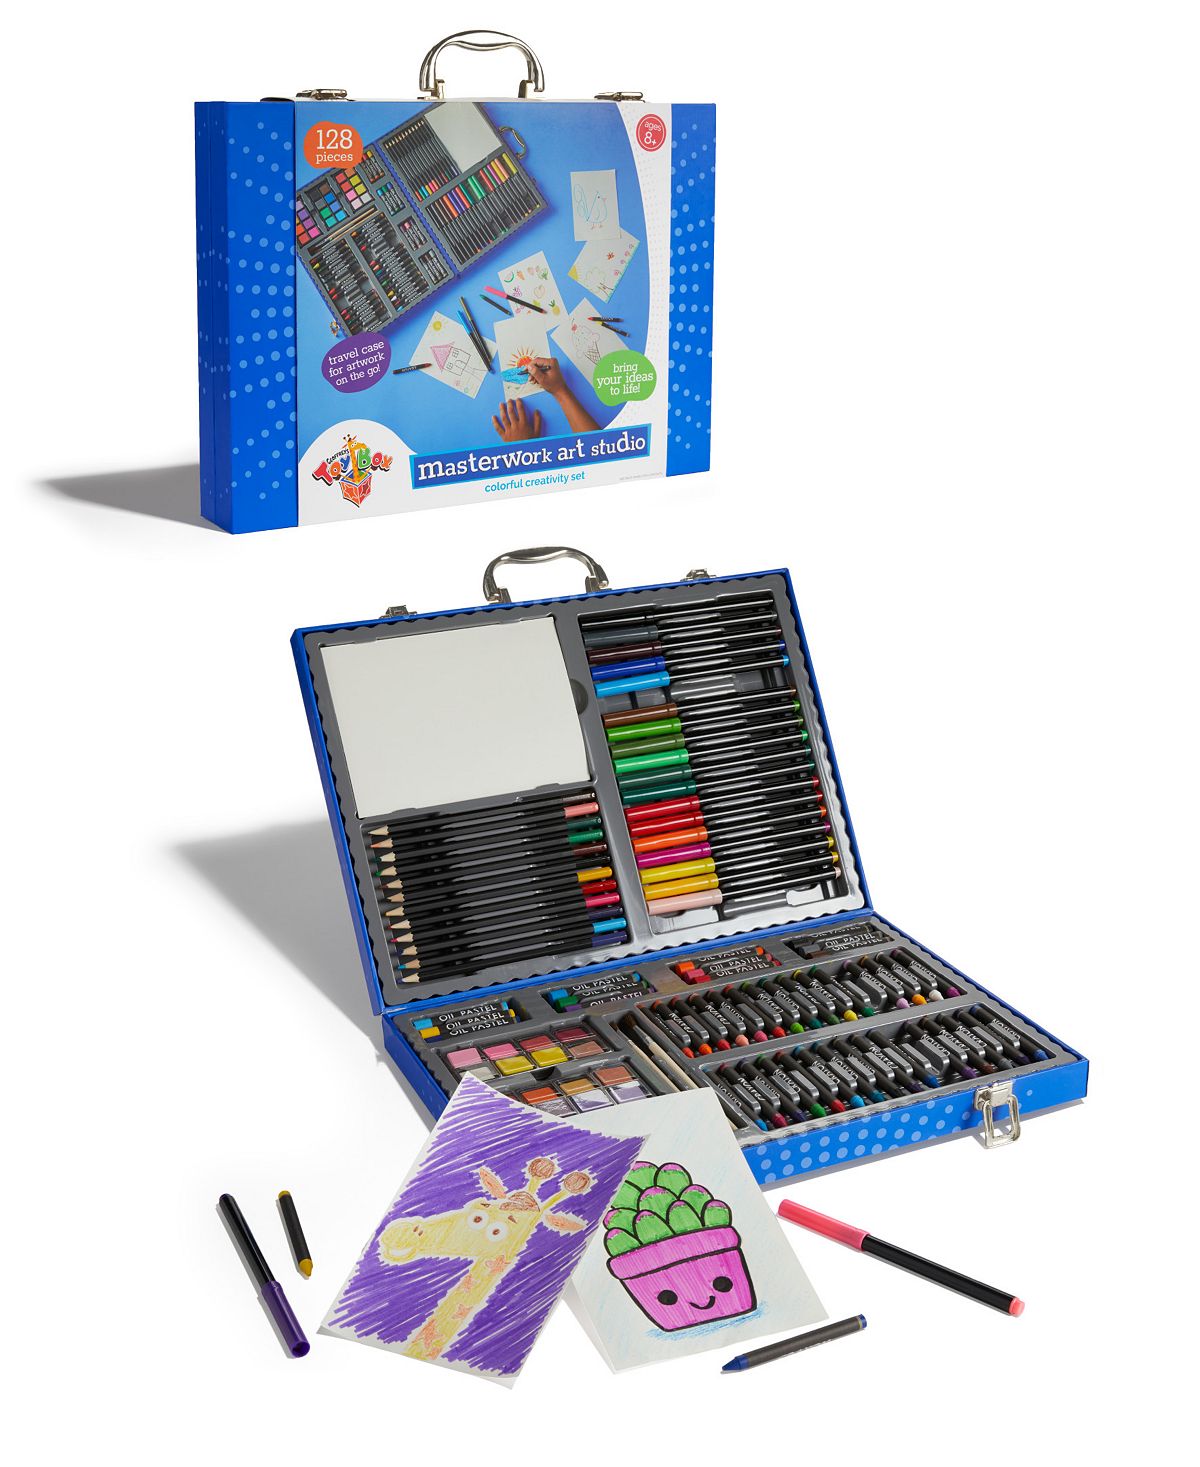 Geoffrey's Toy Box Masterwork Art Studio 128-Piece Set for Macy's